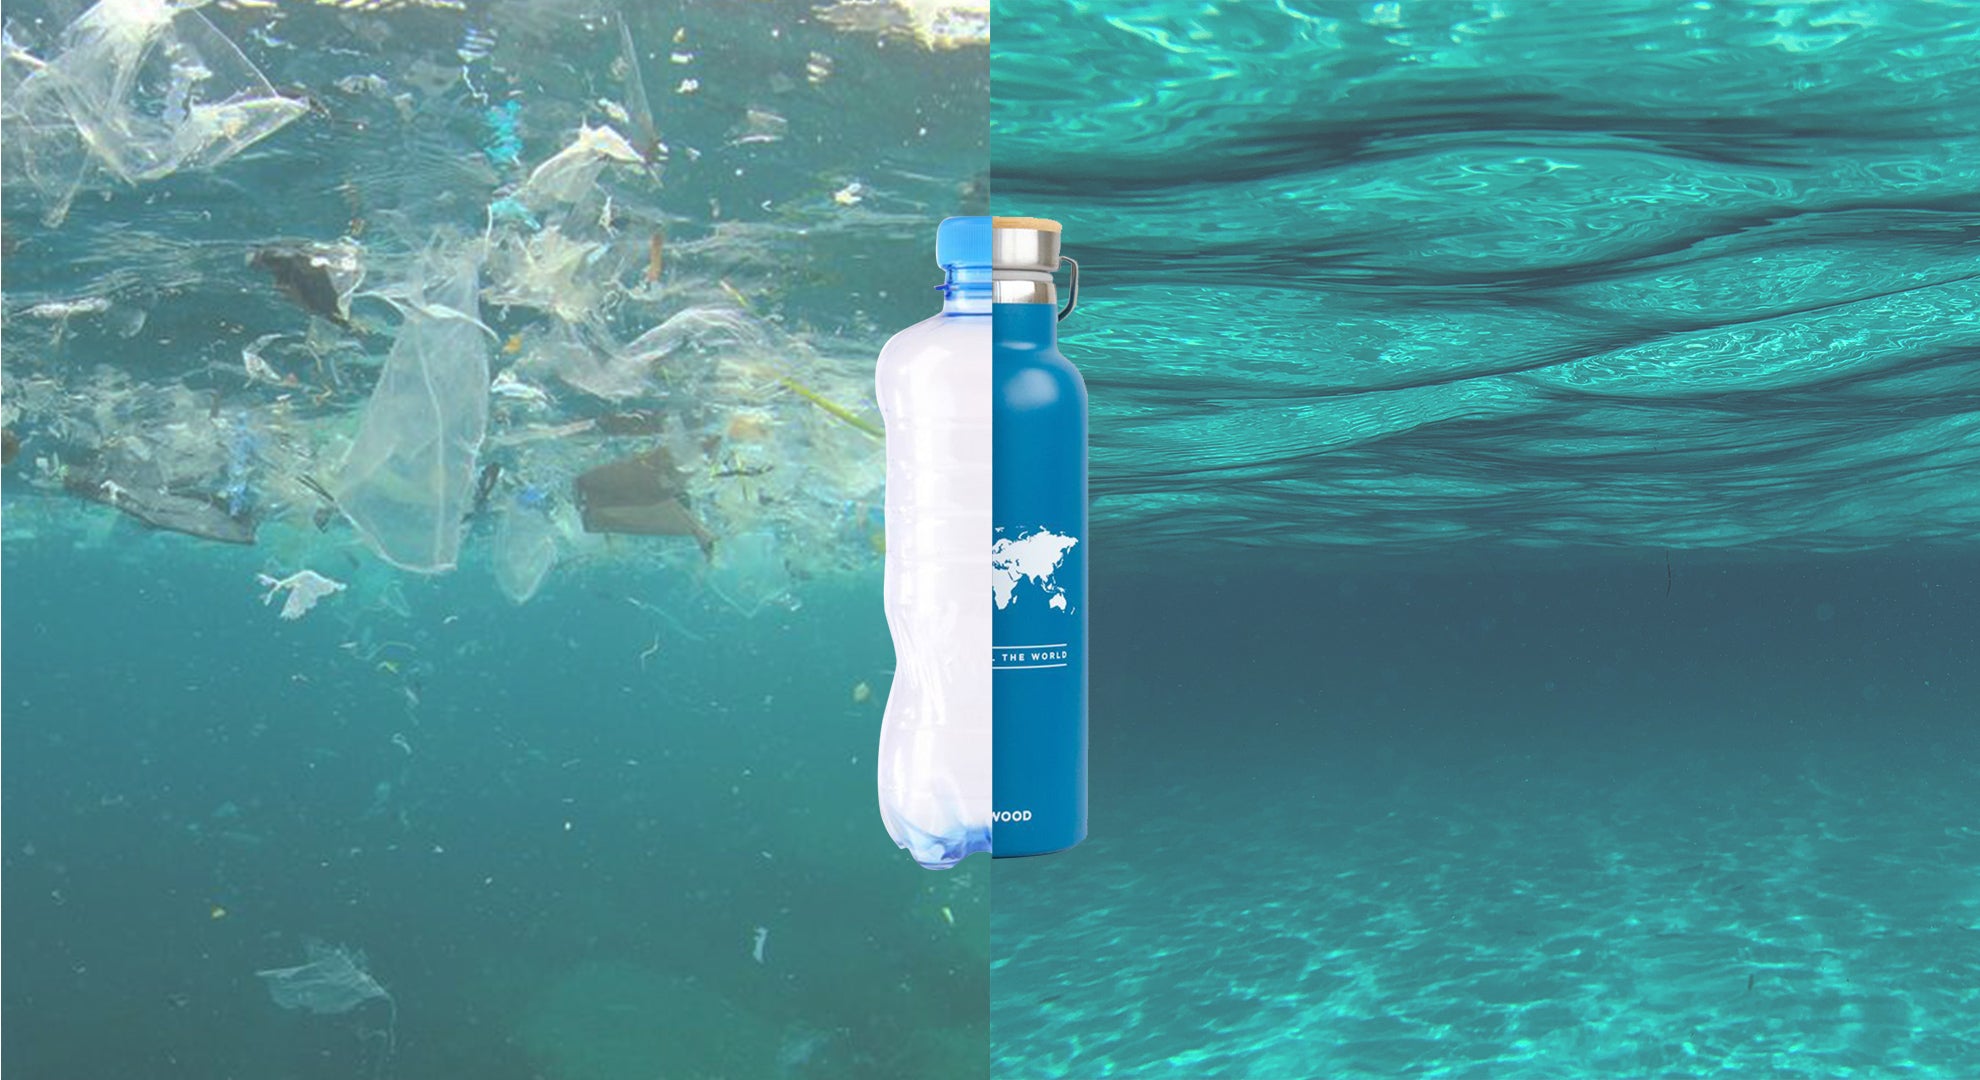 Contaminación botella de plástico vs. botella reutilizable